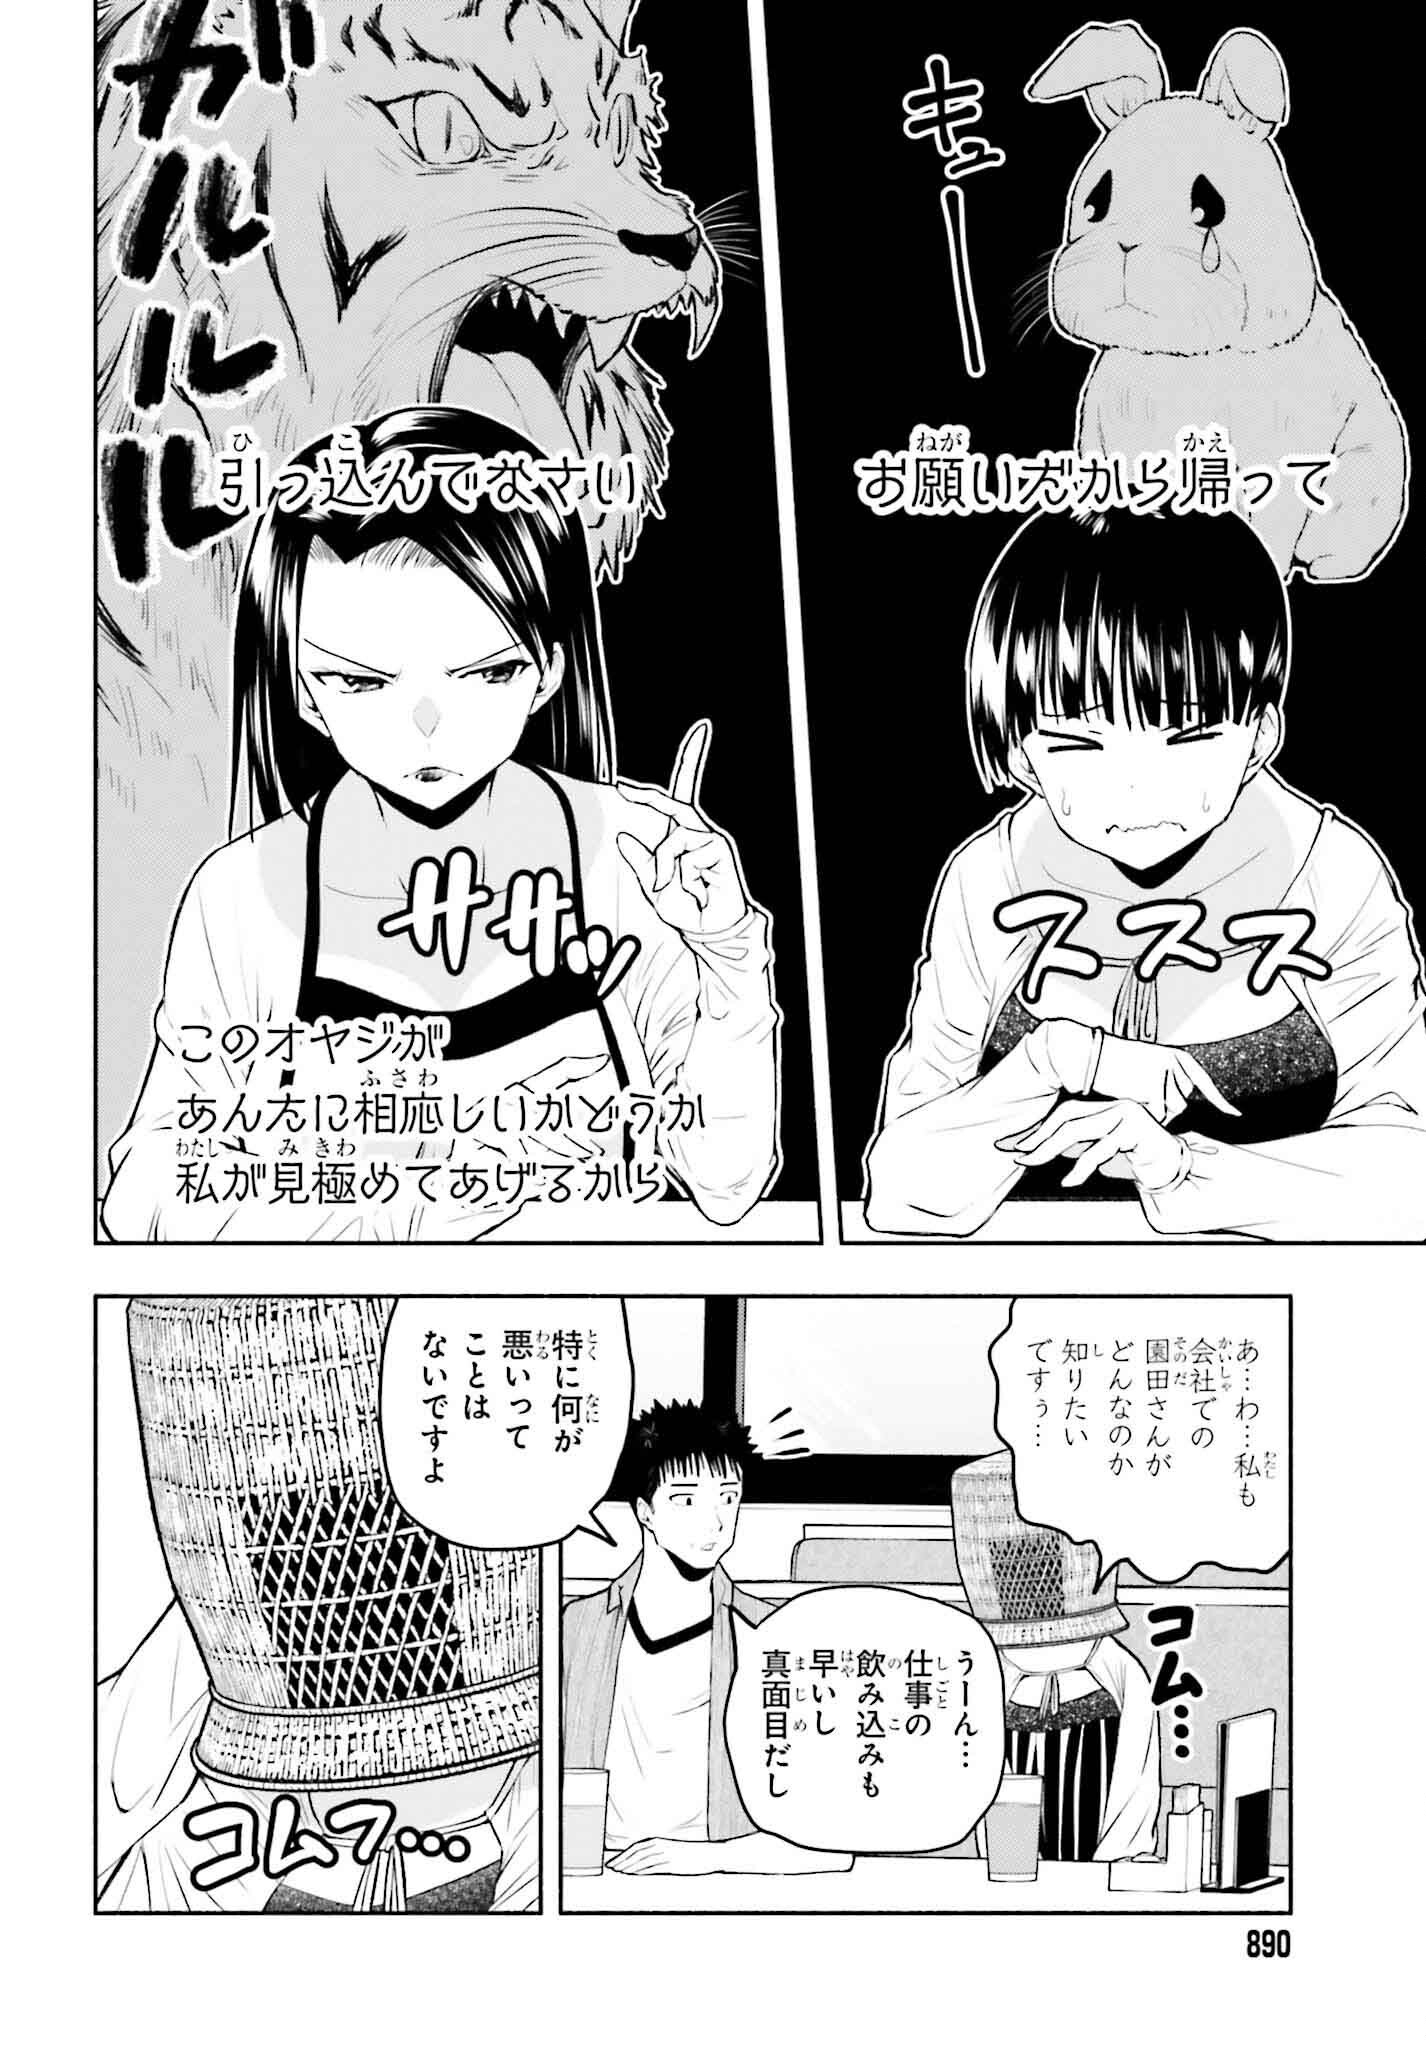 Omiai ni Sugoi Komyushou ga Kita - Chapter 16 - Page 2